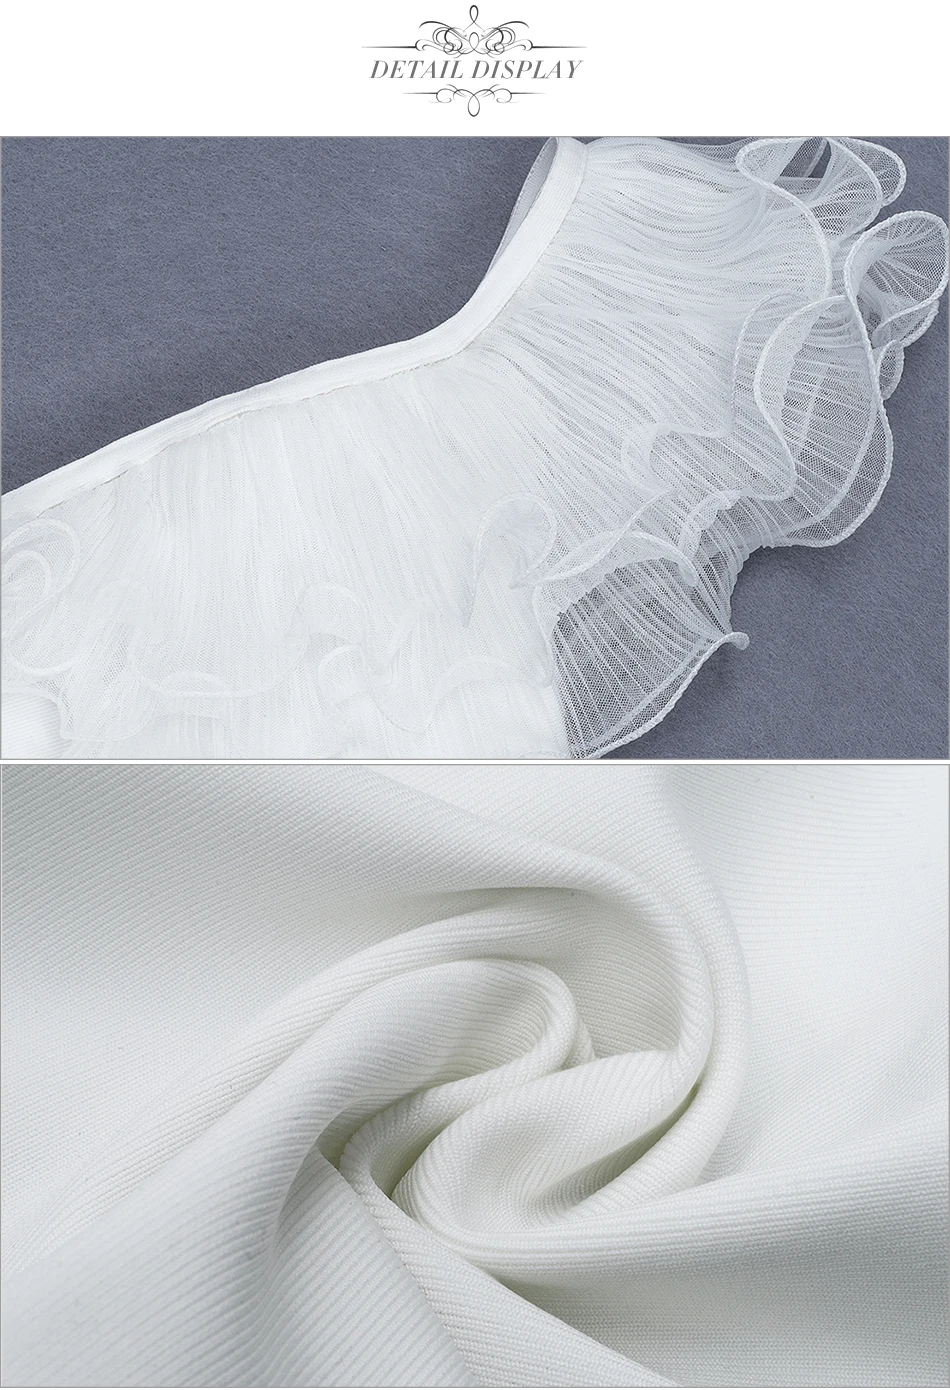 Adyce новые осенние белые топы с открытыми плечами Бандажное платье Для женщин сексуальное облегающее Клубное кружевное вечернее взлетно-посадочной полосы вечерние платье Vestido